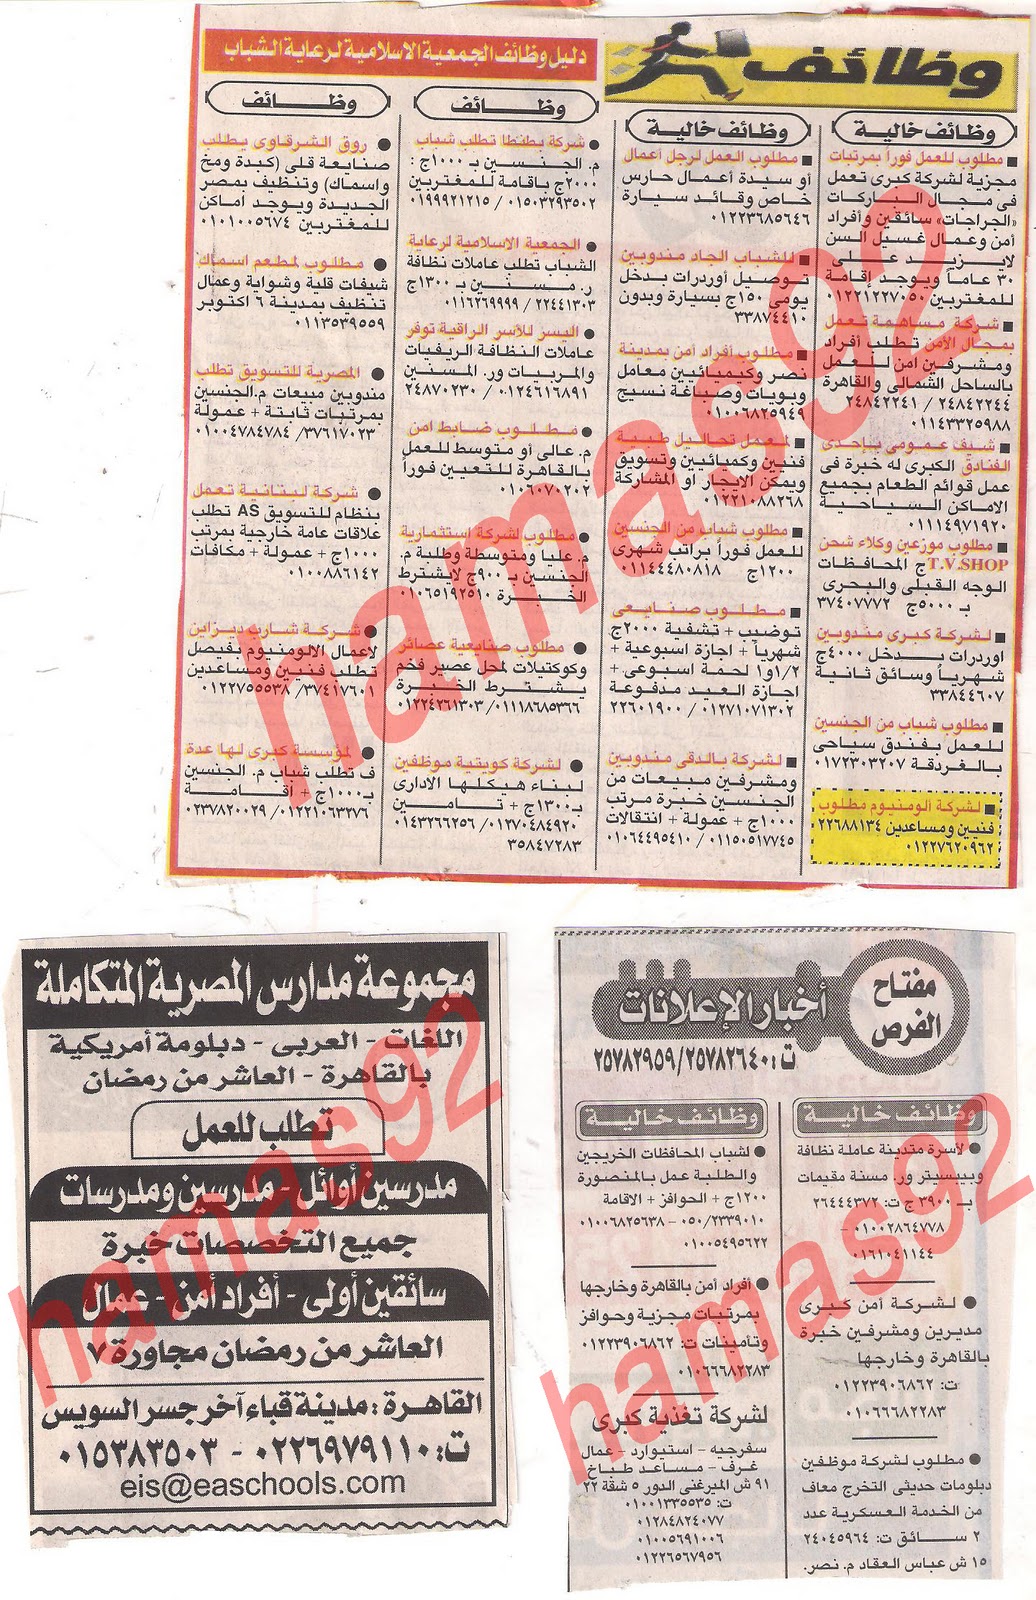 وظائف خالية فى مصر من جريدة اخبار اليوم السبت 22/10/2011 Picture+002